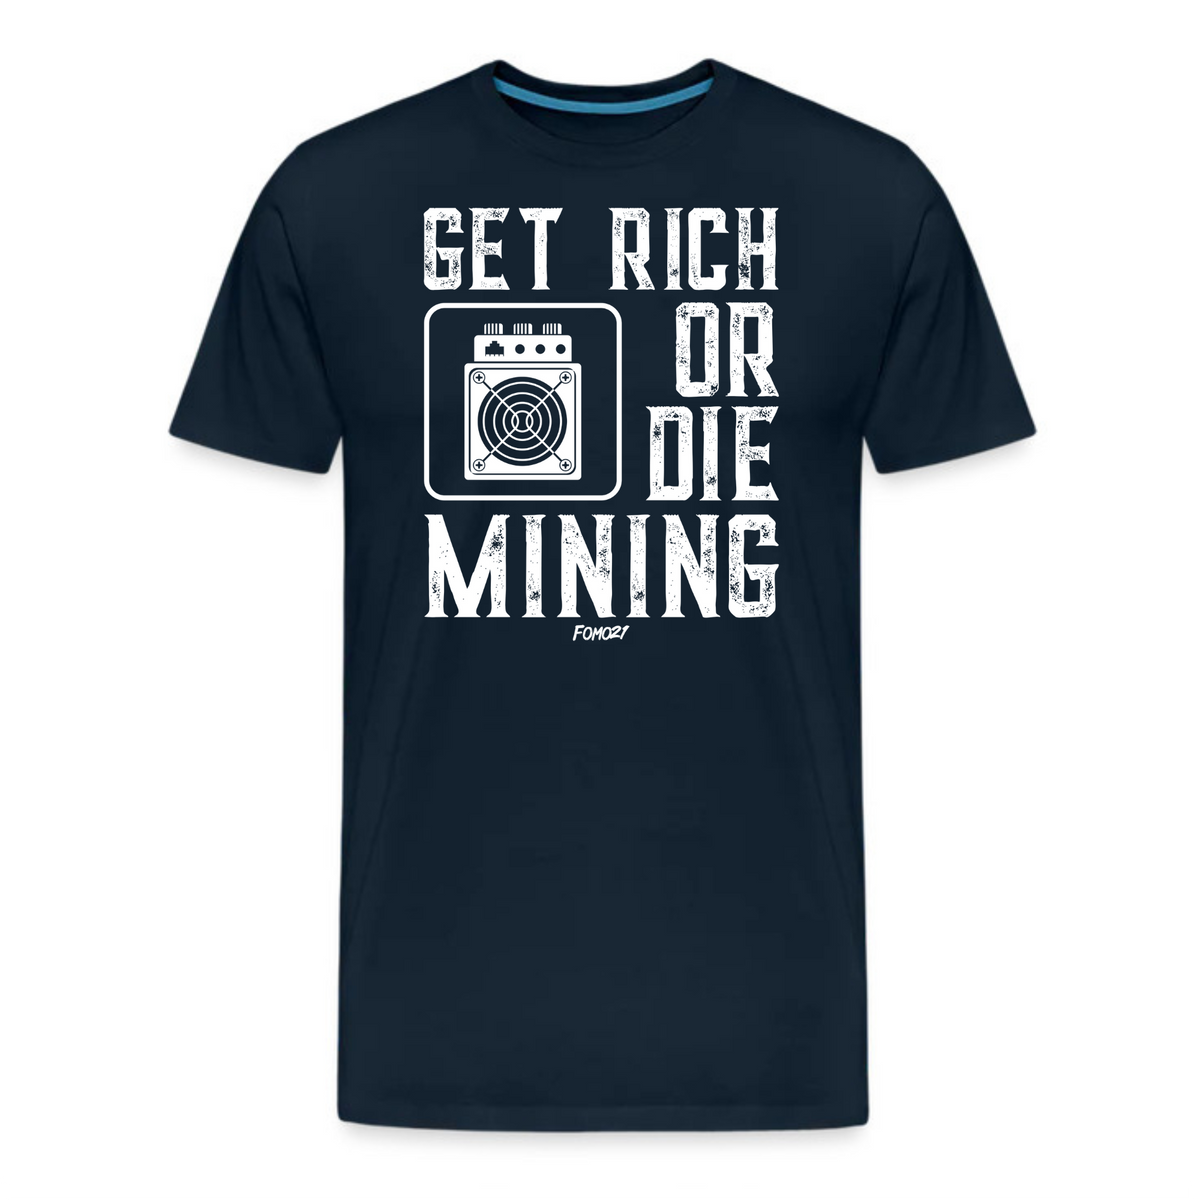 Get Rich Or Die Mining T-Shirt - fomo21